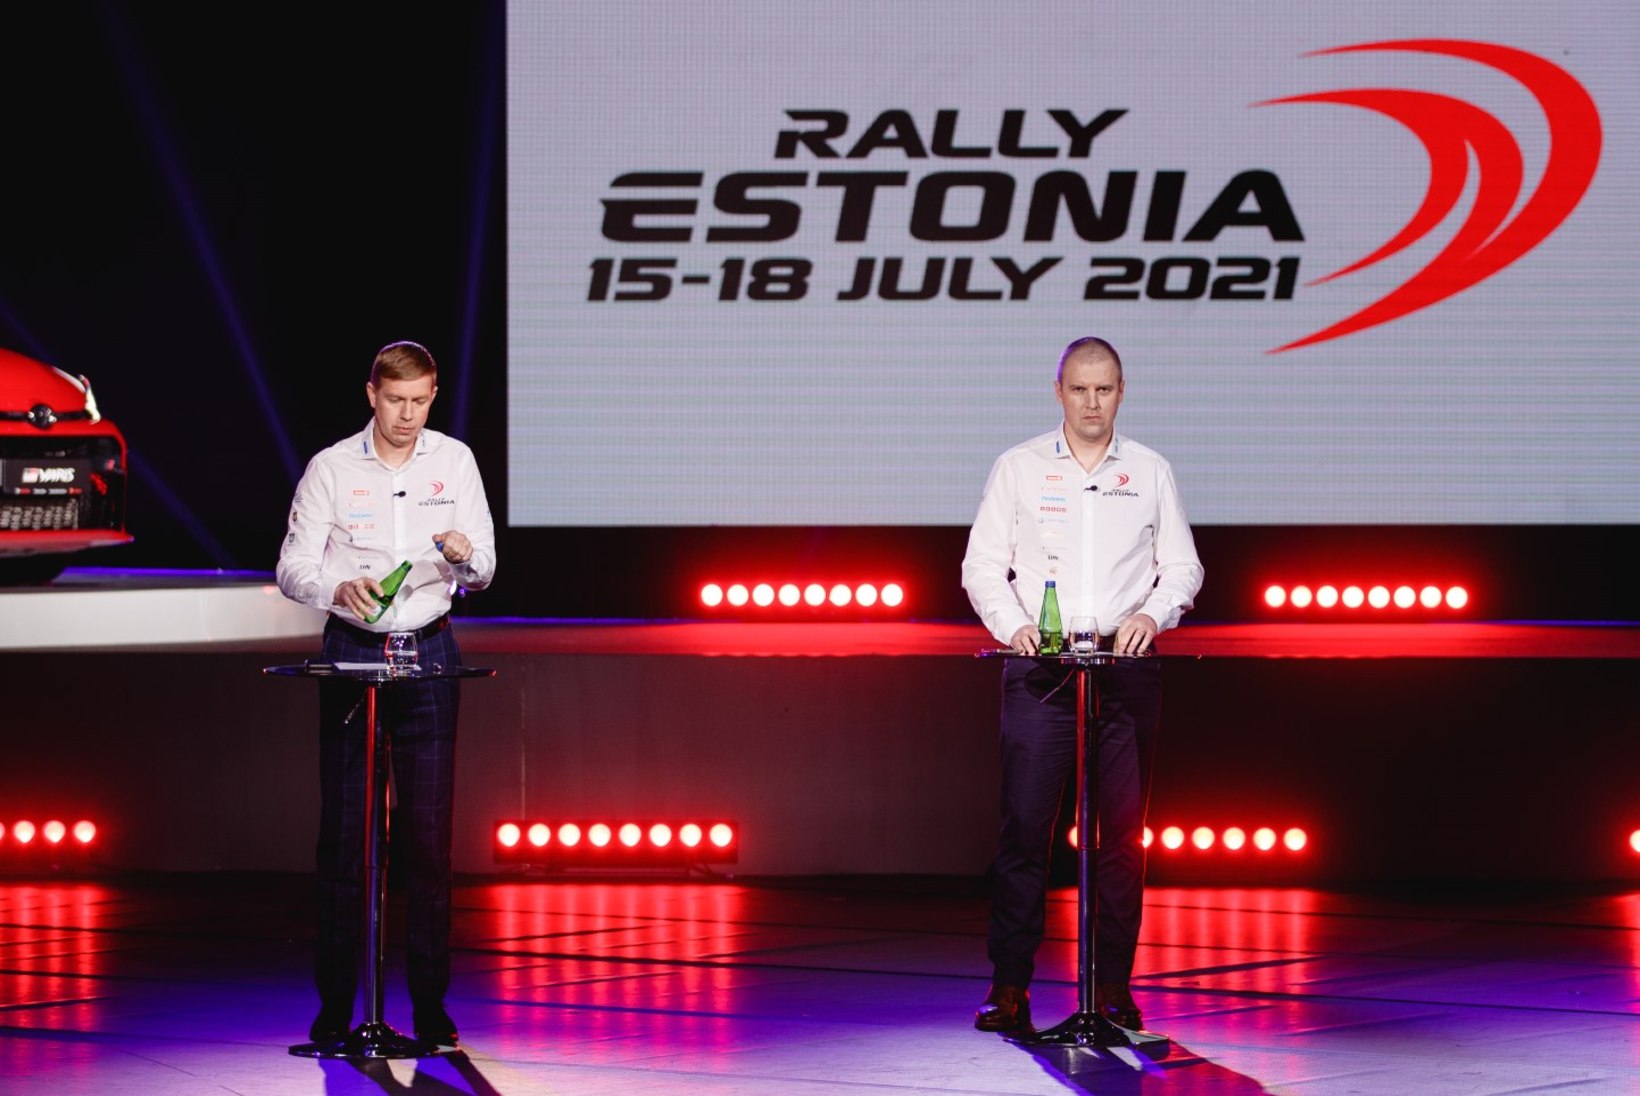 TEENETEMÄRK 2021 | Rally Estonia korraldaja: maailm on tasakaalus – koroona tõi Eestisse WRC-etapi, seesama koroona jätab nüüd ära piduliku ordenitseremoonia